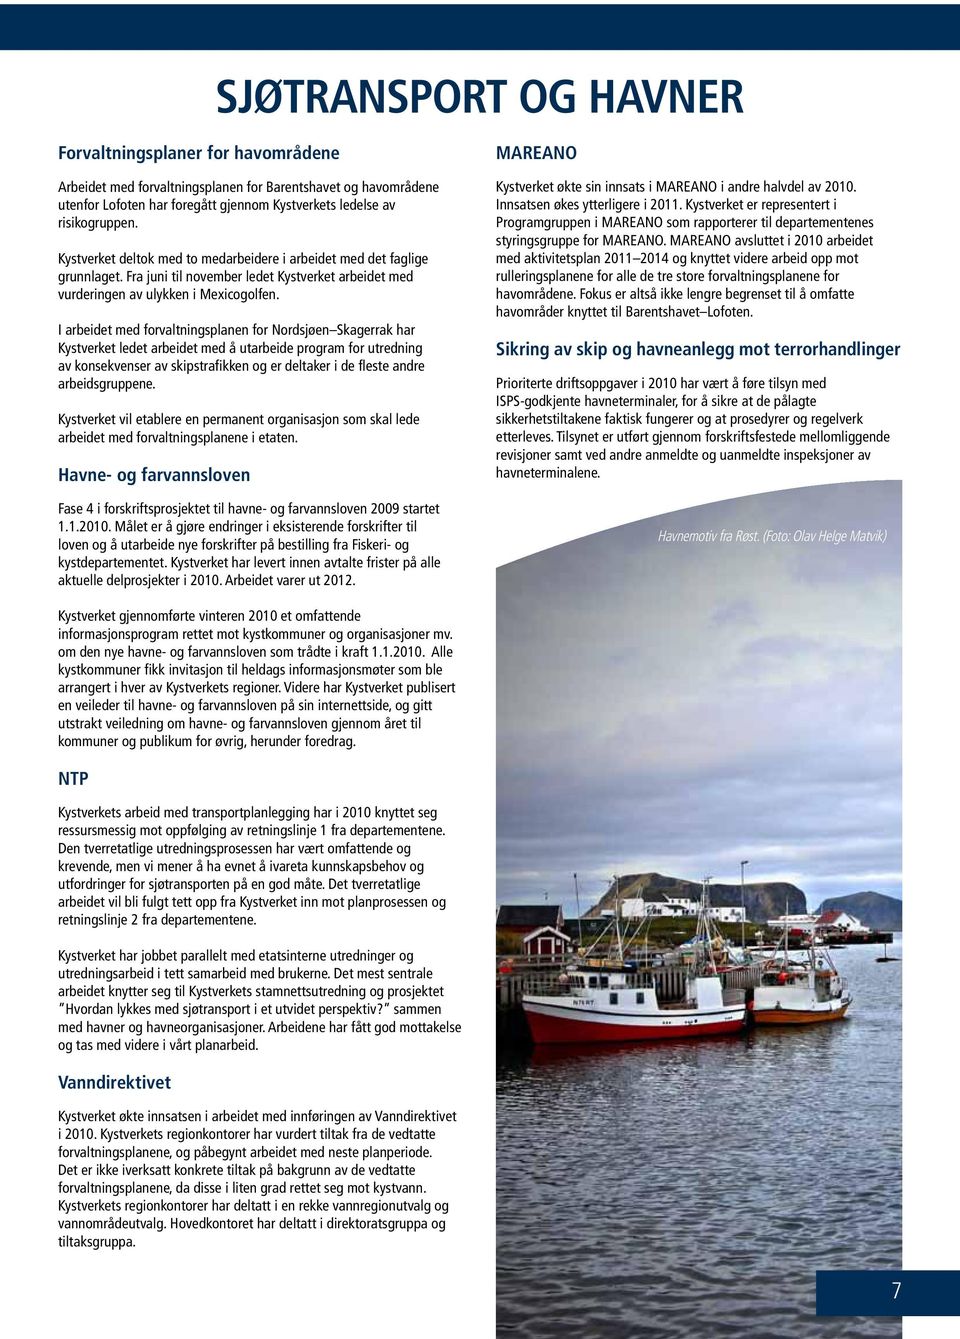 I arbeidet med forvaltningsplanen for Nordsjøen Skagerrak har Kystverket ledet arbeidet med å utarbeide program for utredning av konsekvenser av skipstrafikken og er deltaker i de fleste andre